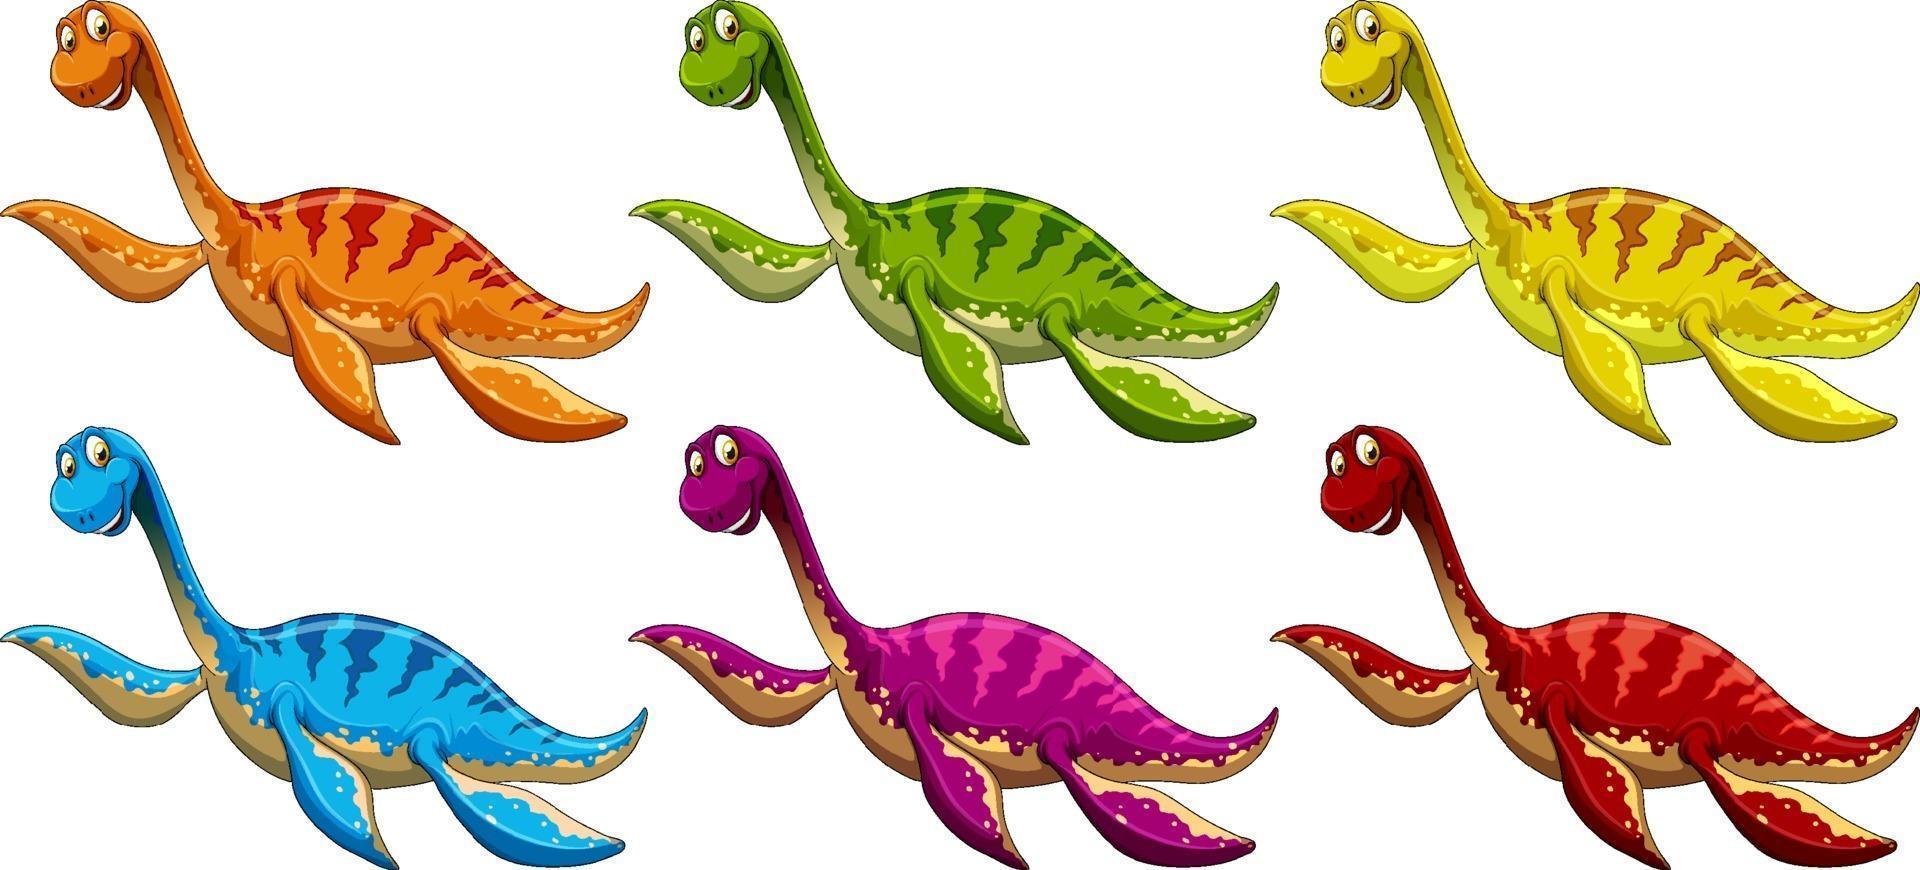 Satz Pliosaurus-Dinosaurier-Zeichentrickfigur vektor